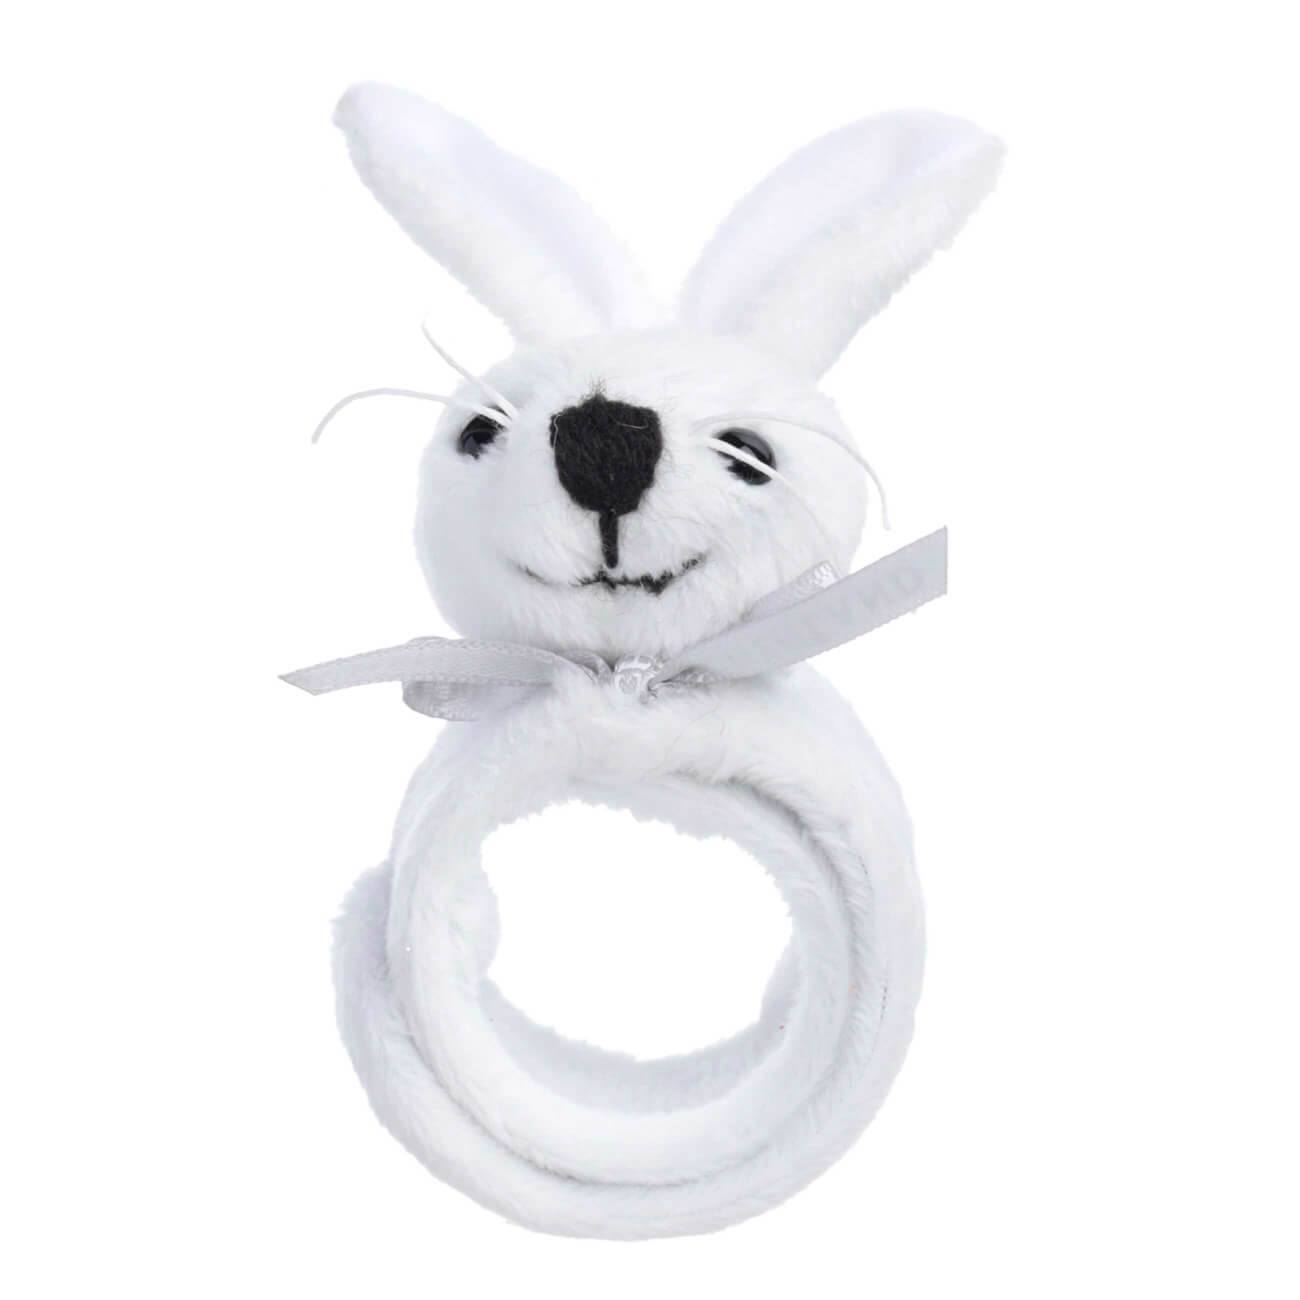 Браслет, 22 см, детский, мягкий, полиэстер, белый, Кролик, Rabbit toy браслет 22 см детский мягкий полиэстер белый кролик rabbit toy